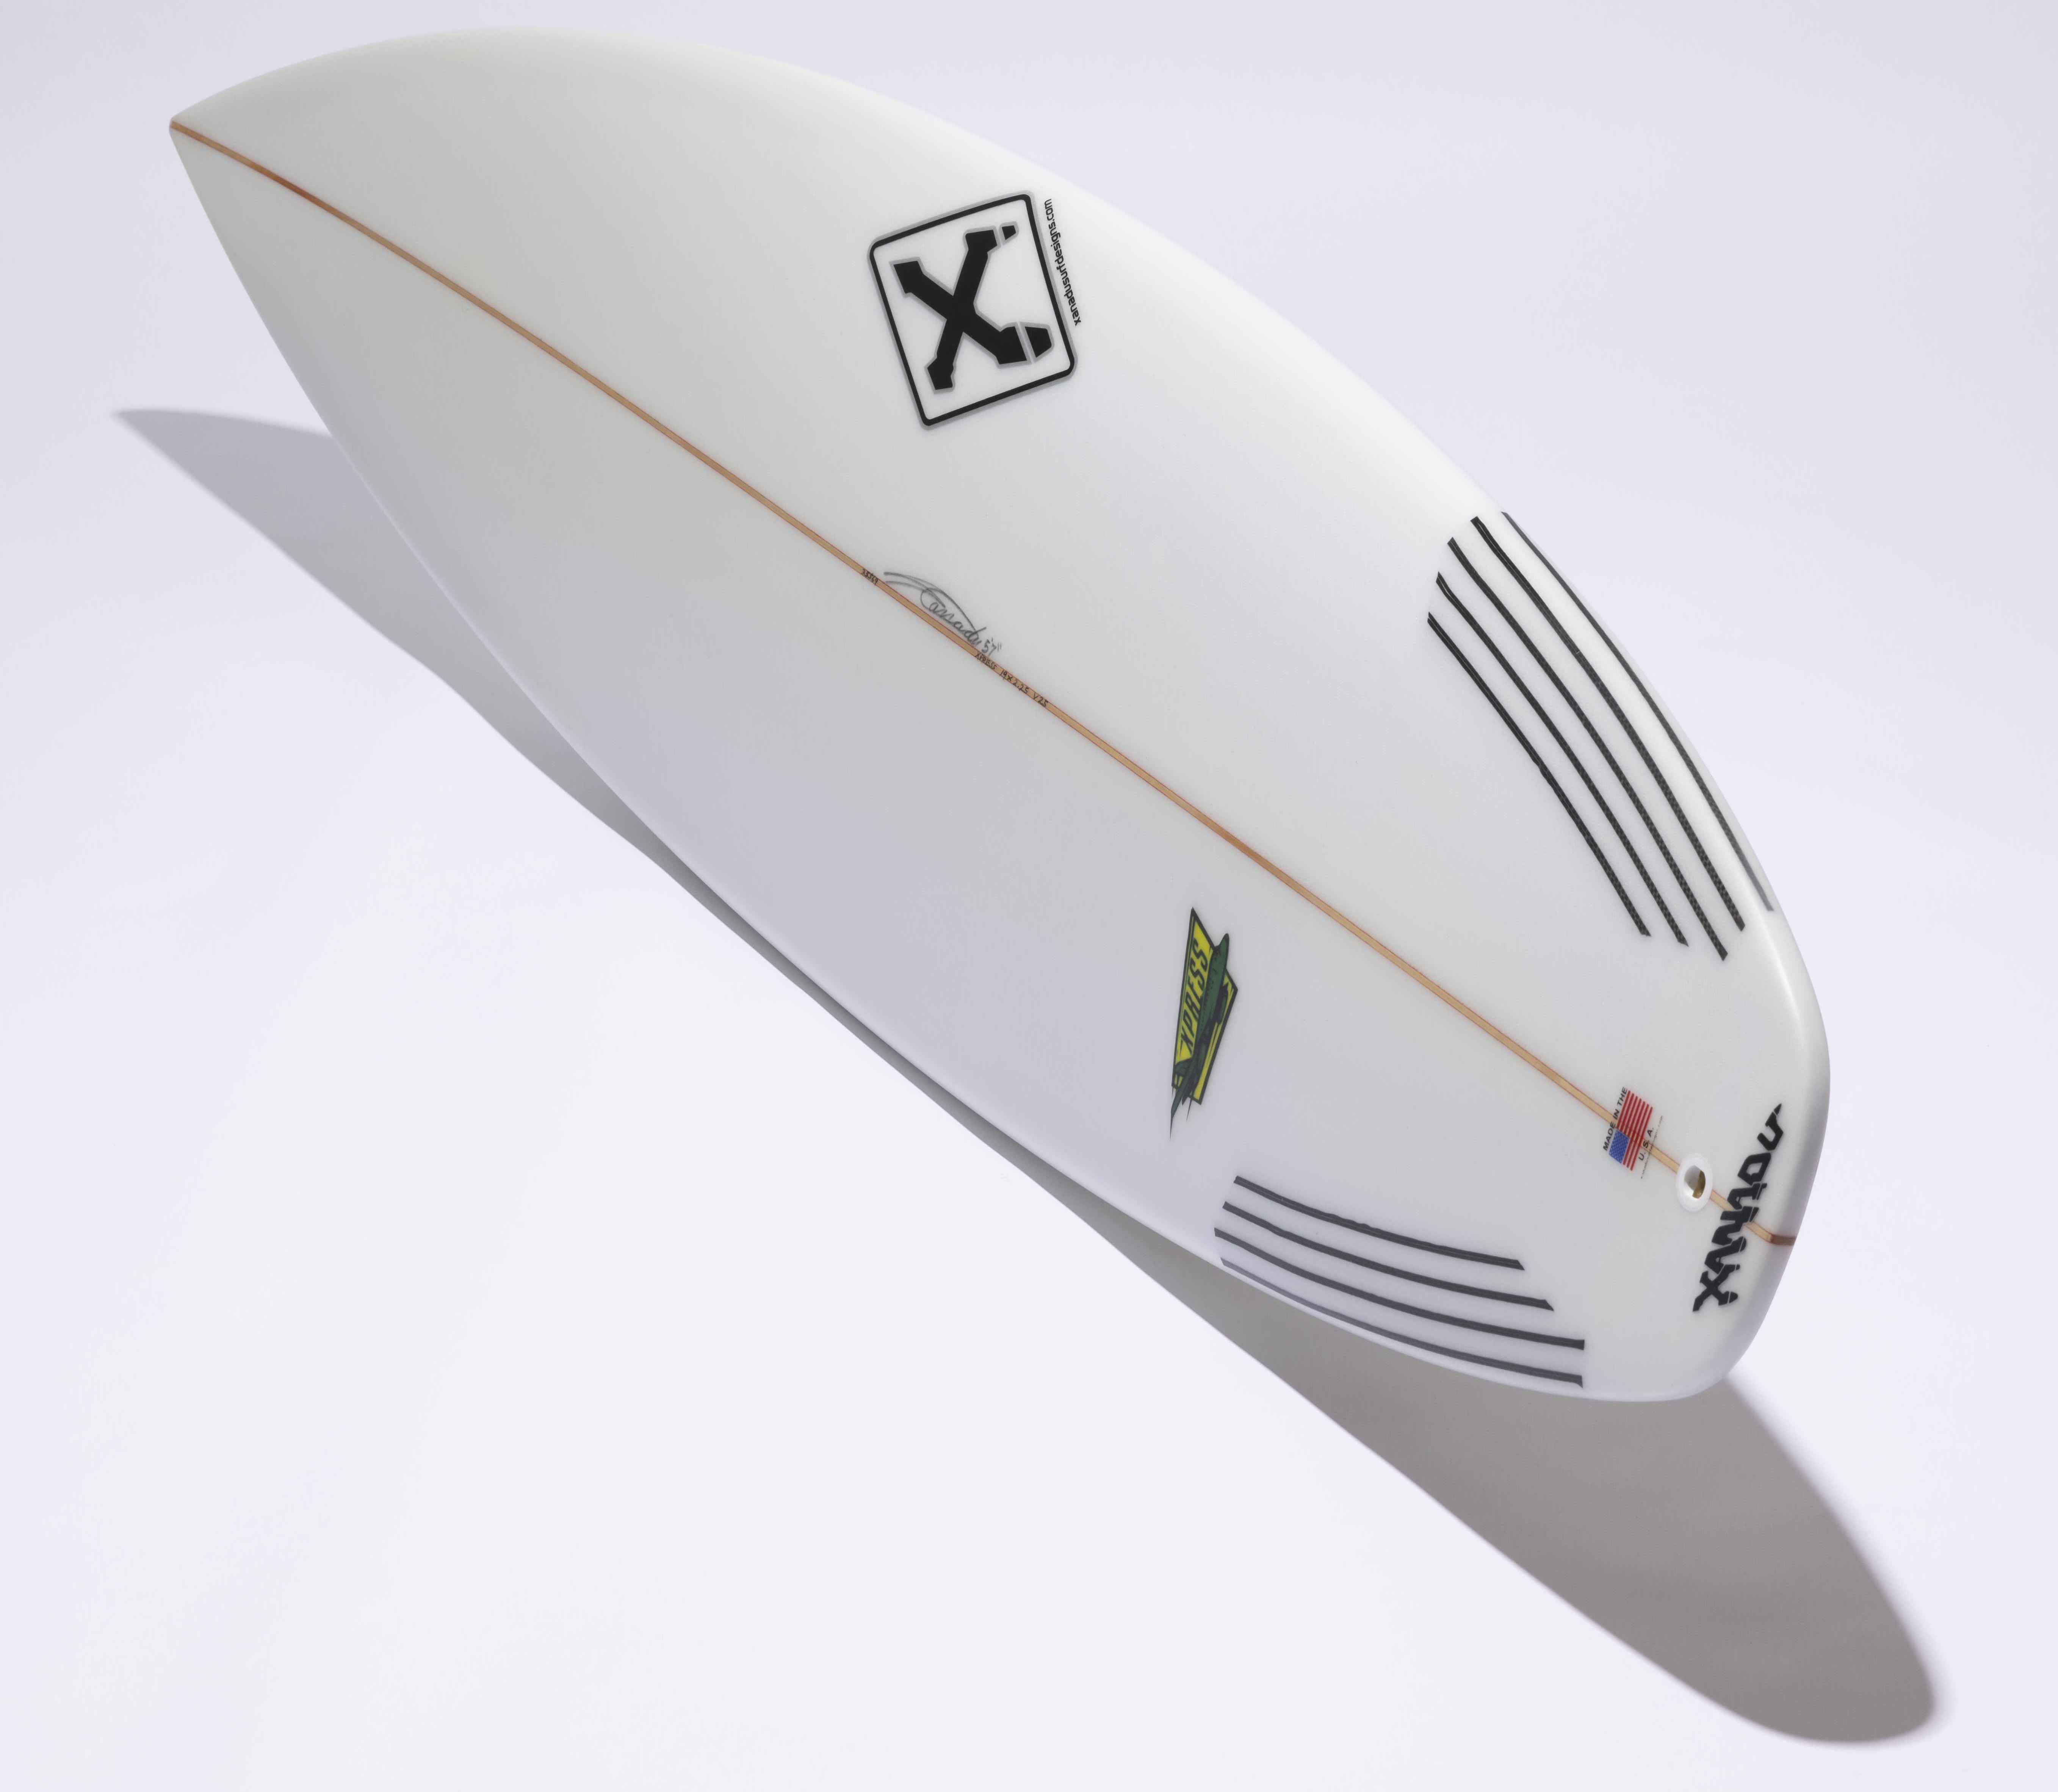 革新的なボードデザインで支持される老舗ブランド | SURFIN'LIFE 